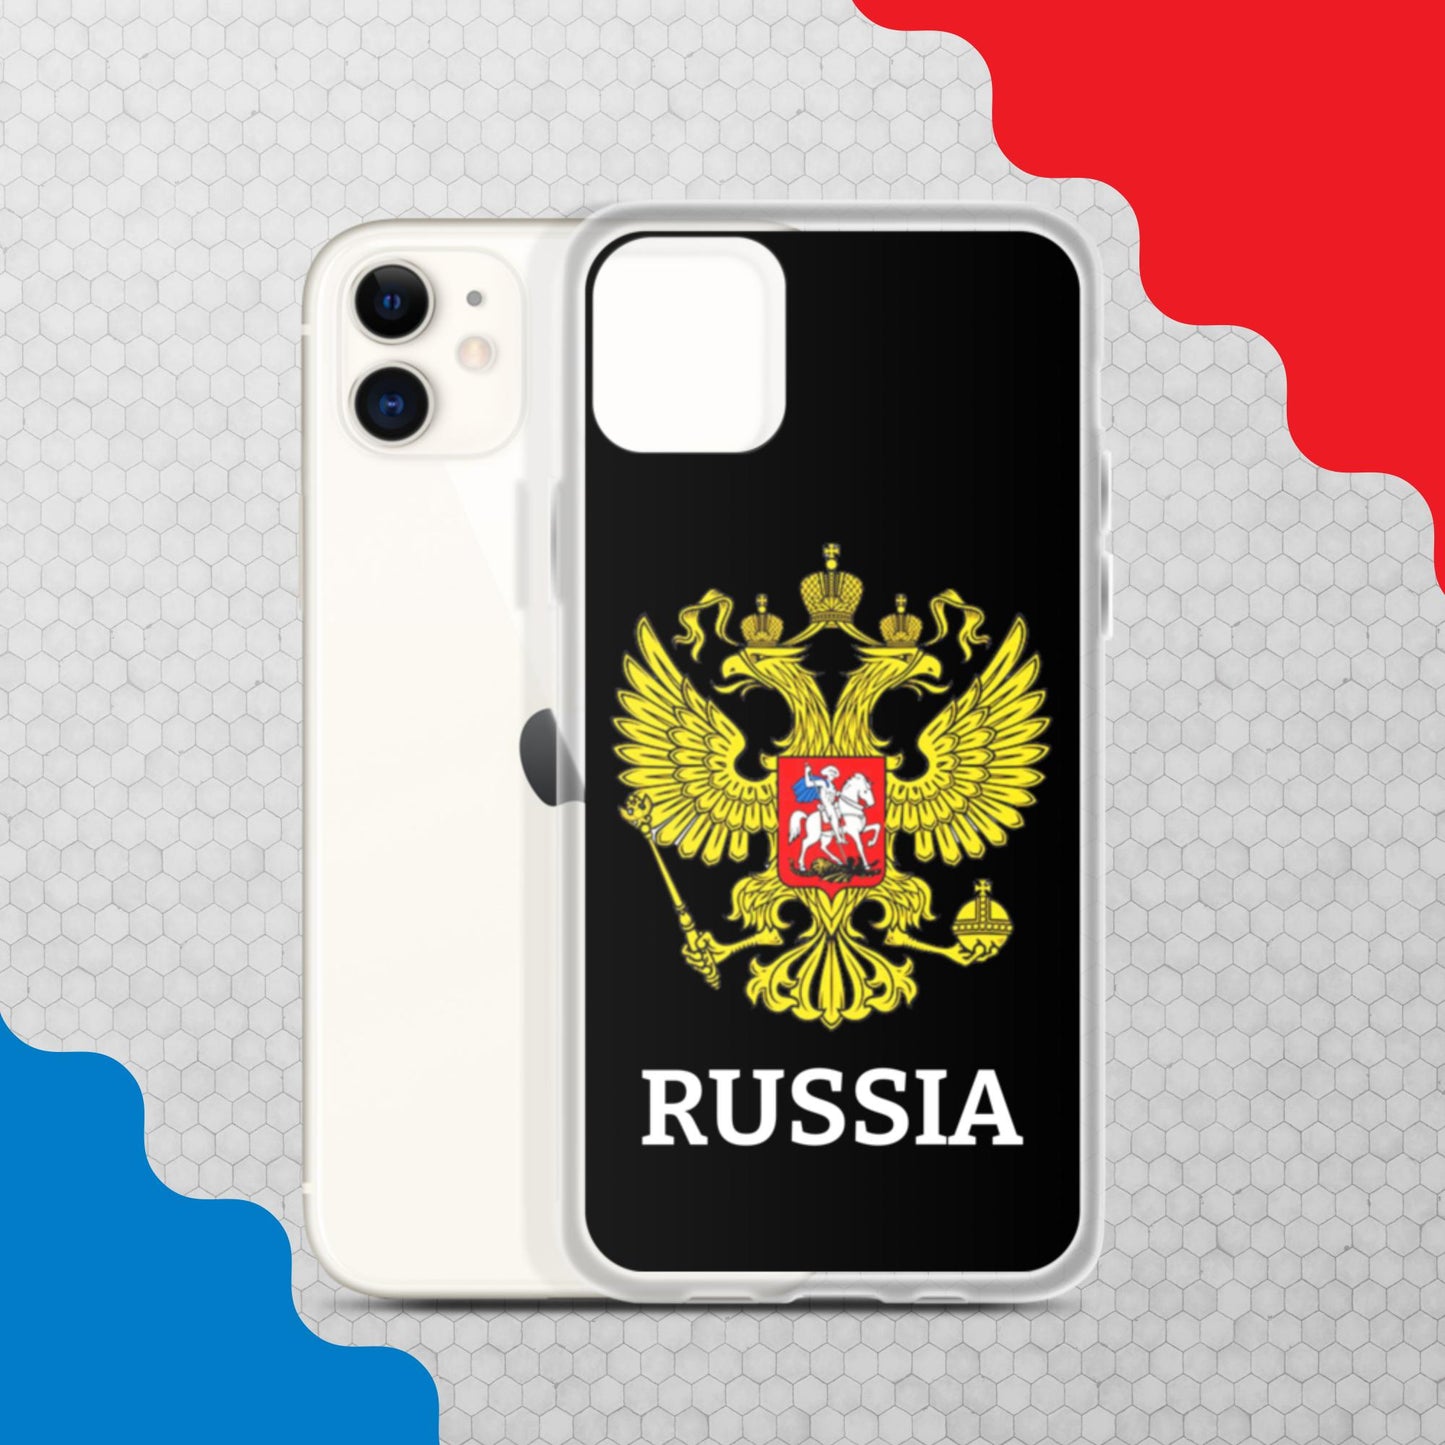 iPhone-Hülle mit Russland-Wappen in schwarz (alle Modelle)